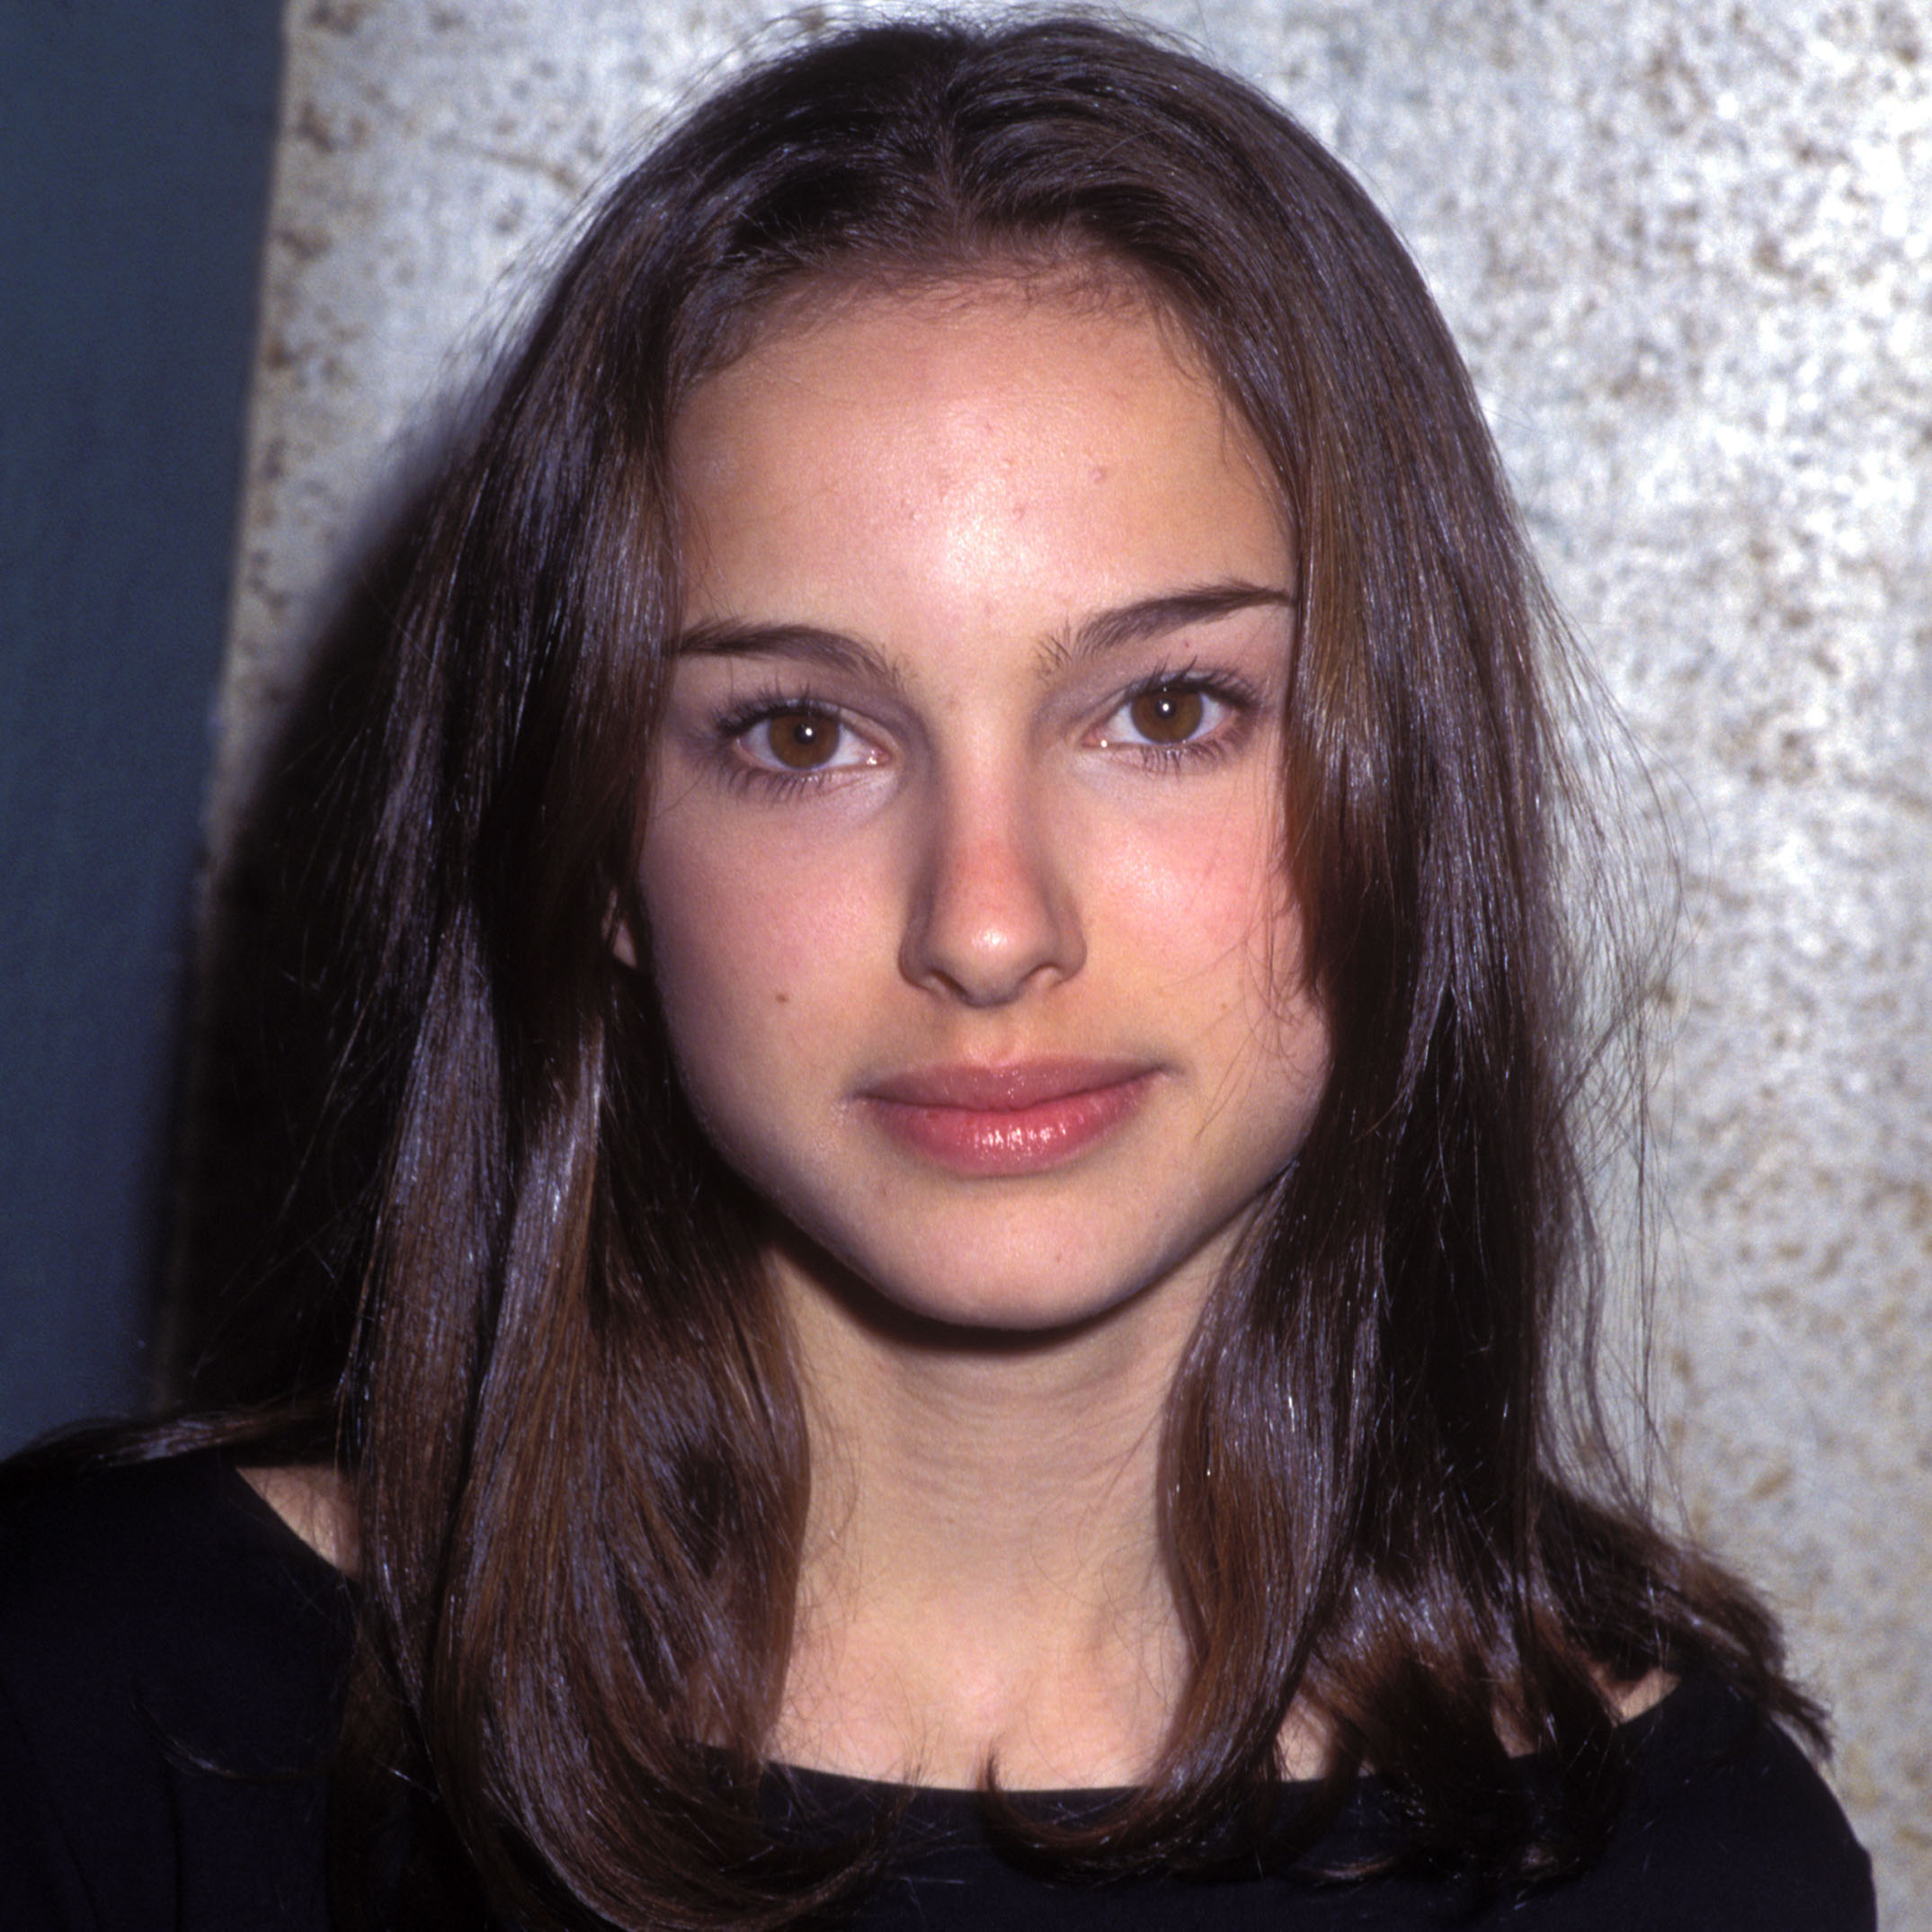 Natalie Portman March 1996 ?fit=200,1